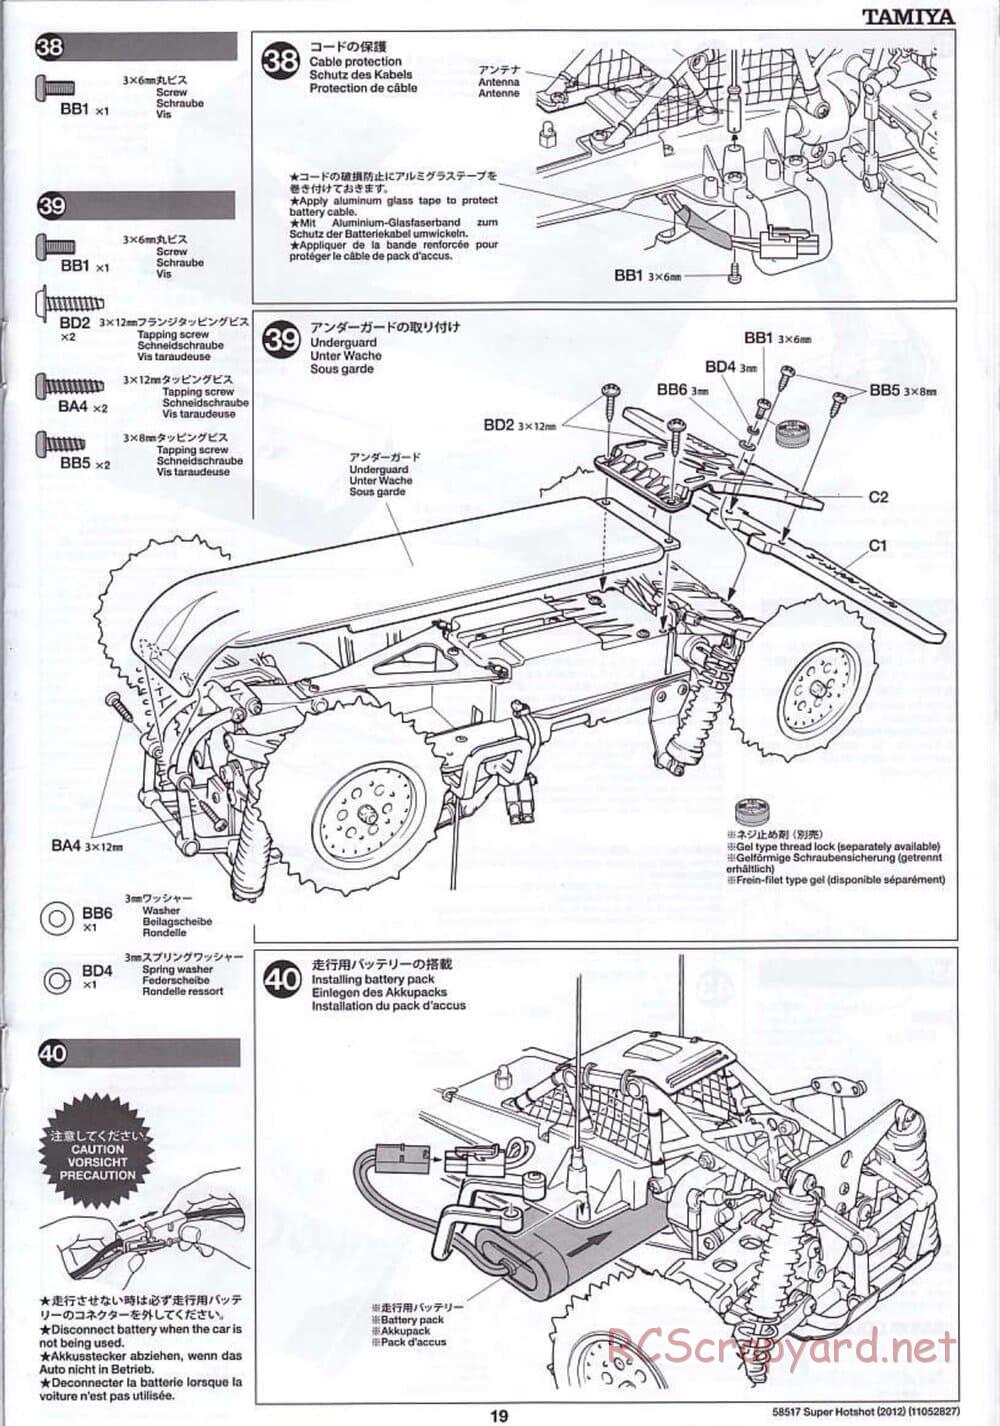 Tamiya - Super Hotshot 2012 - HS Chassis - Manual - Page 19